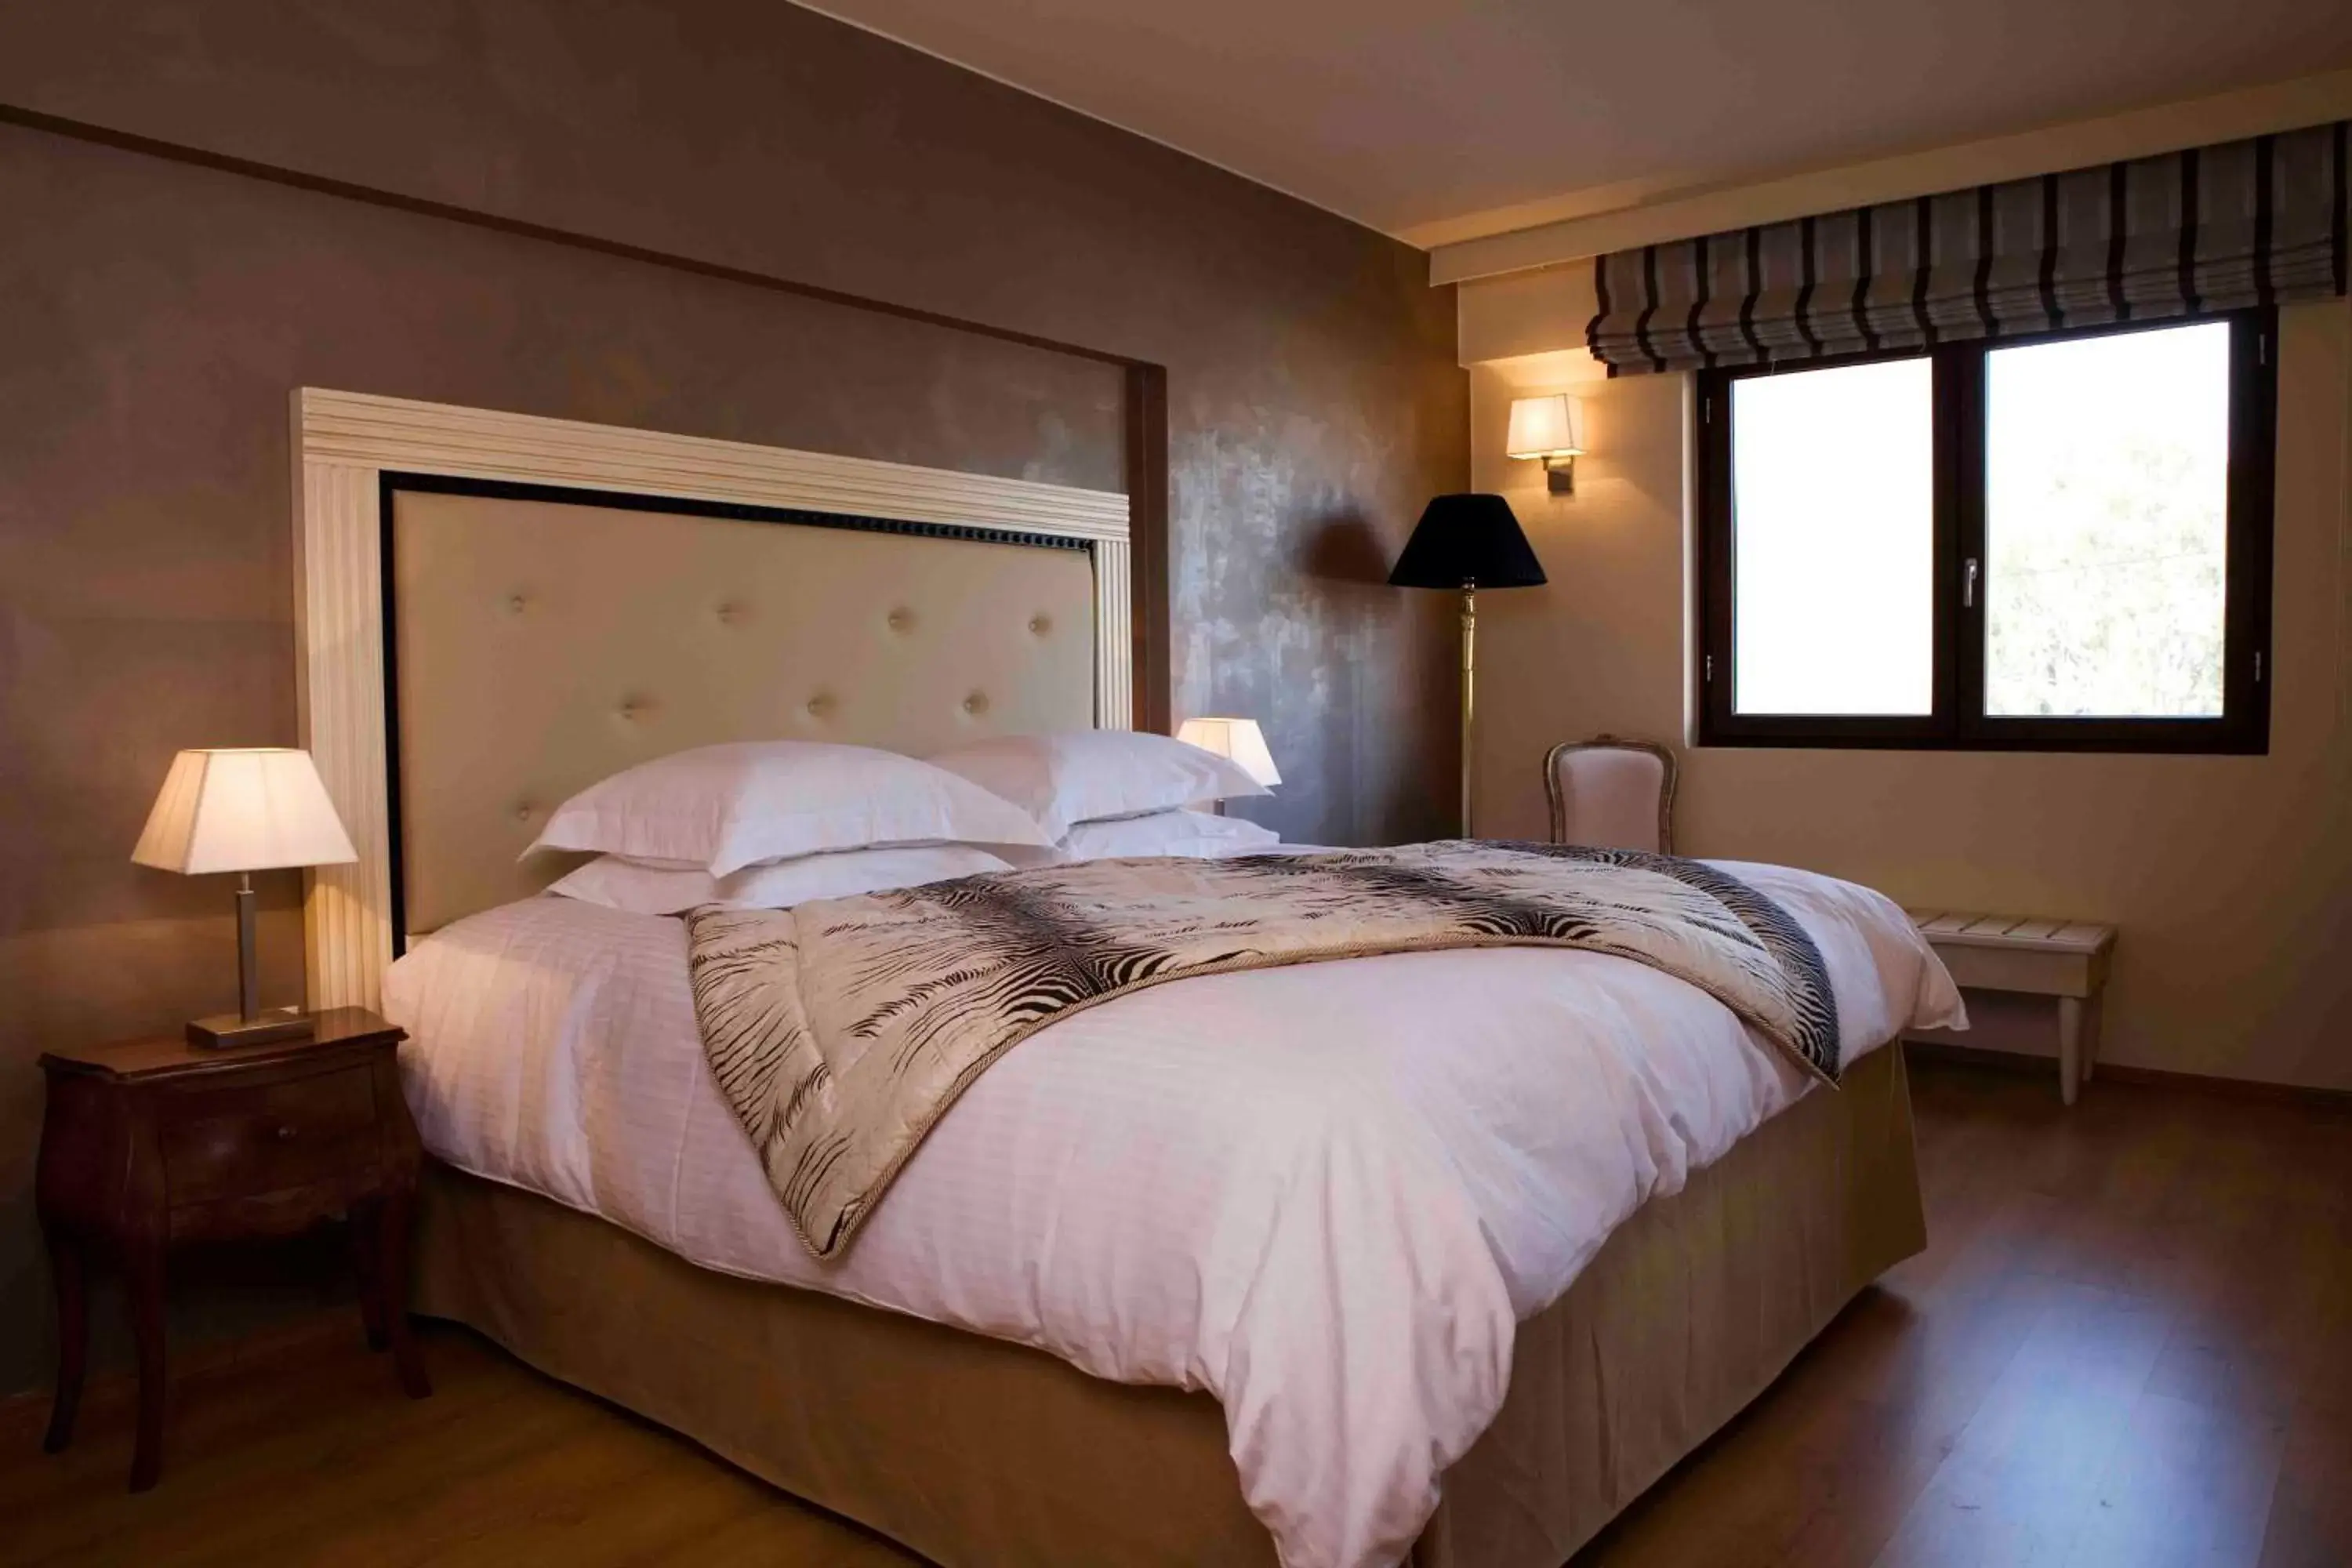 Bed in Valis Resort Hotel